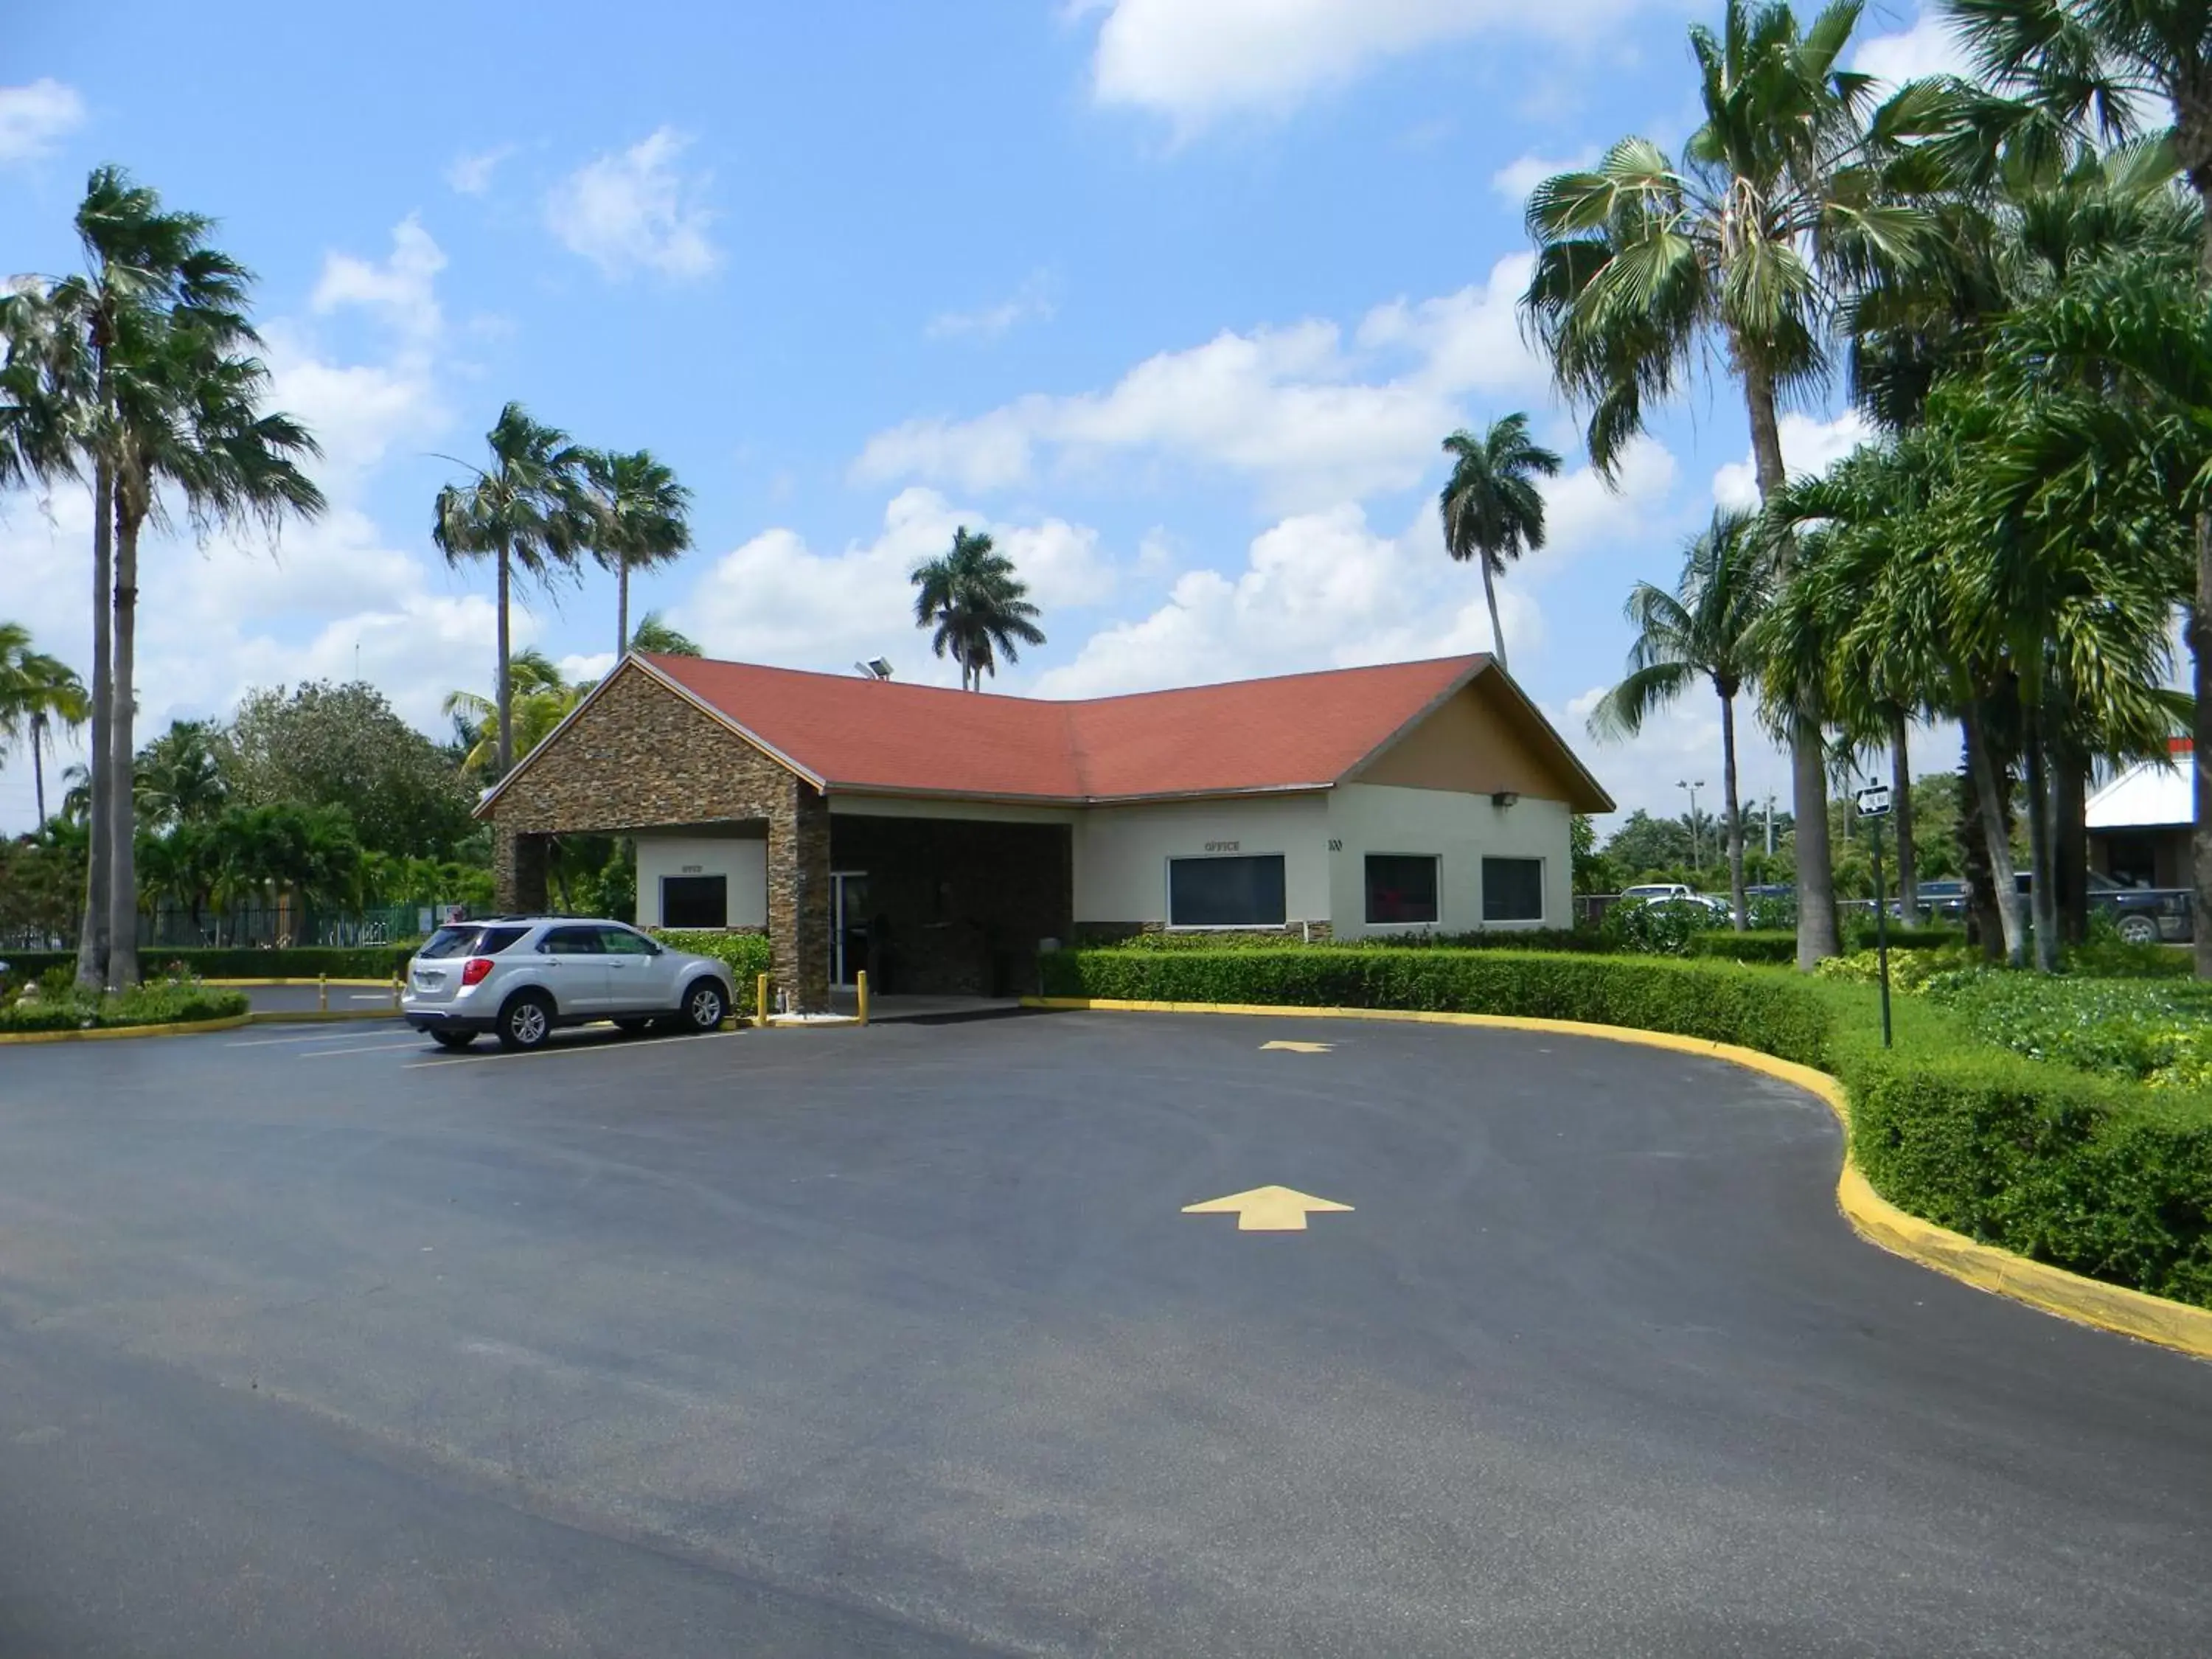 Facade/entrance, Property Building in Fairway Inn Florida City Homestead Everglades